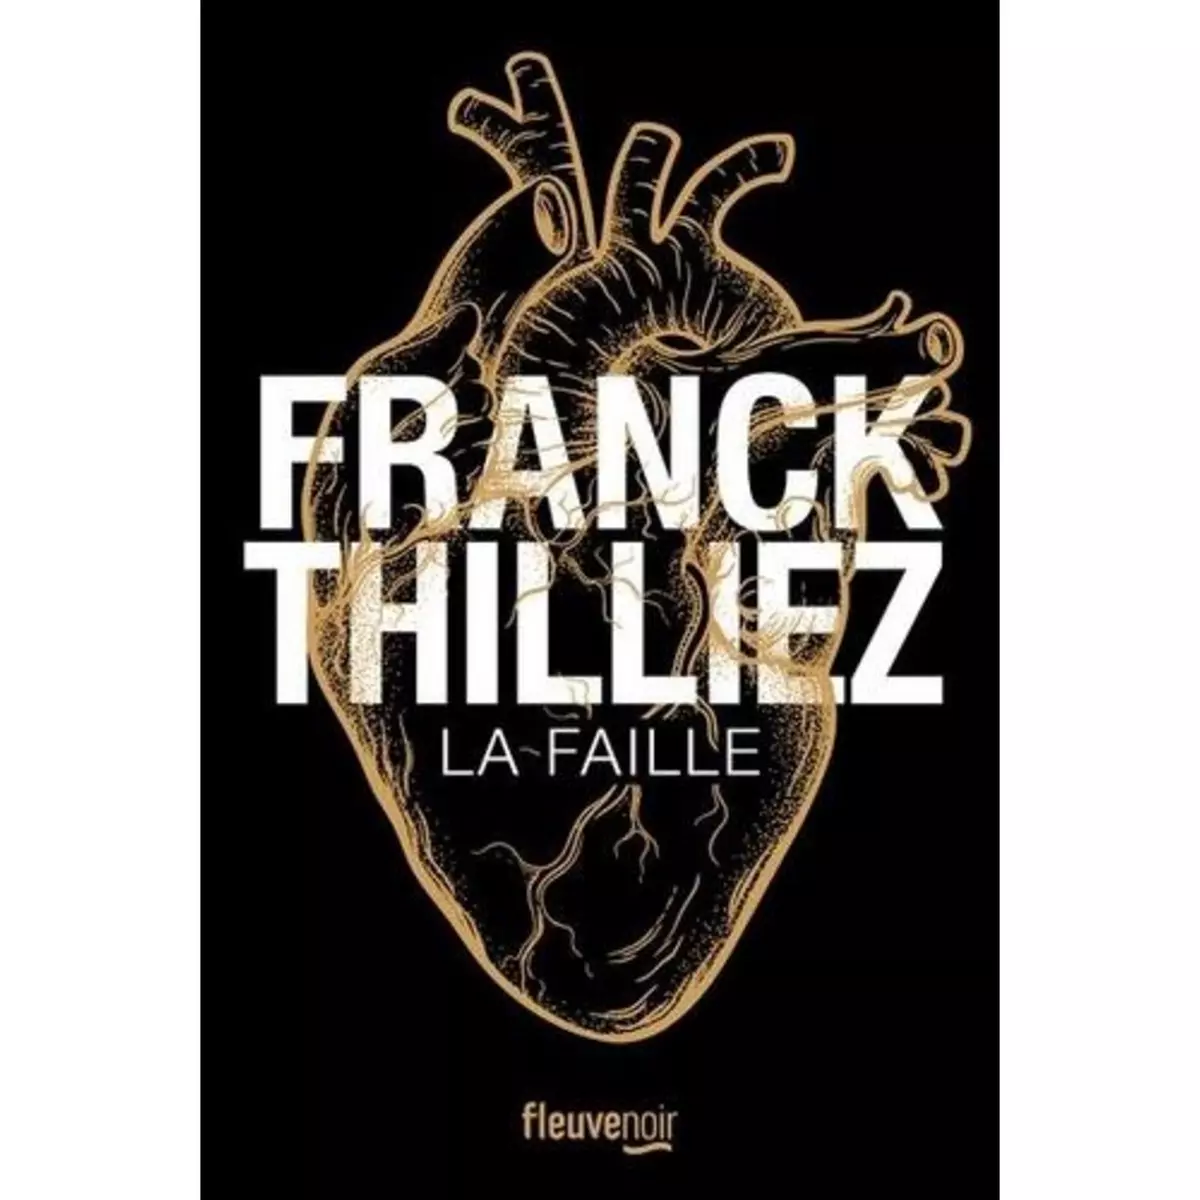  LA FAILLE. EDITION COLLECTOR, Thilliez Franck